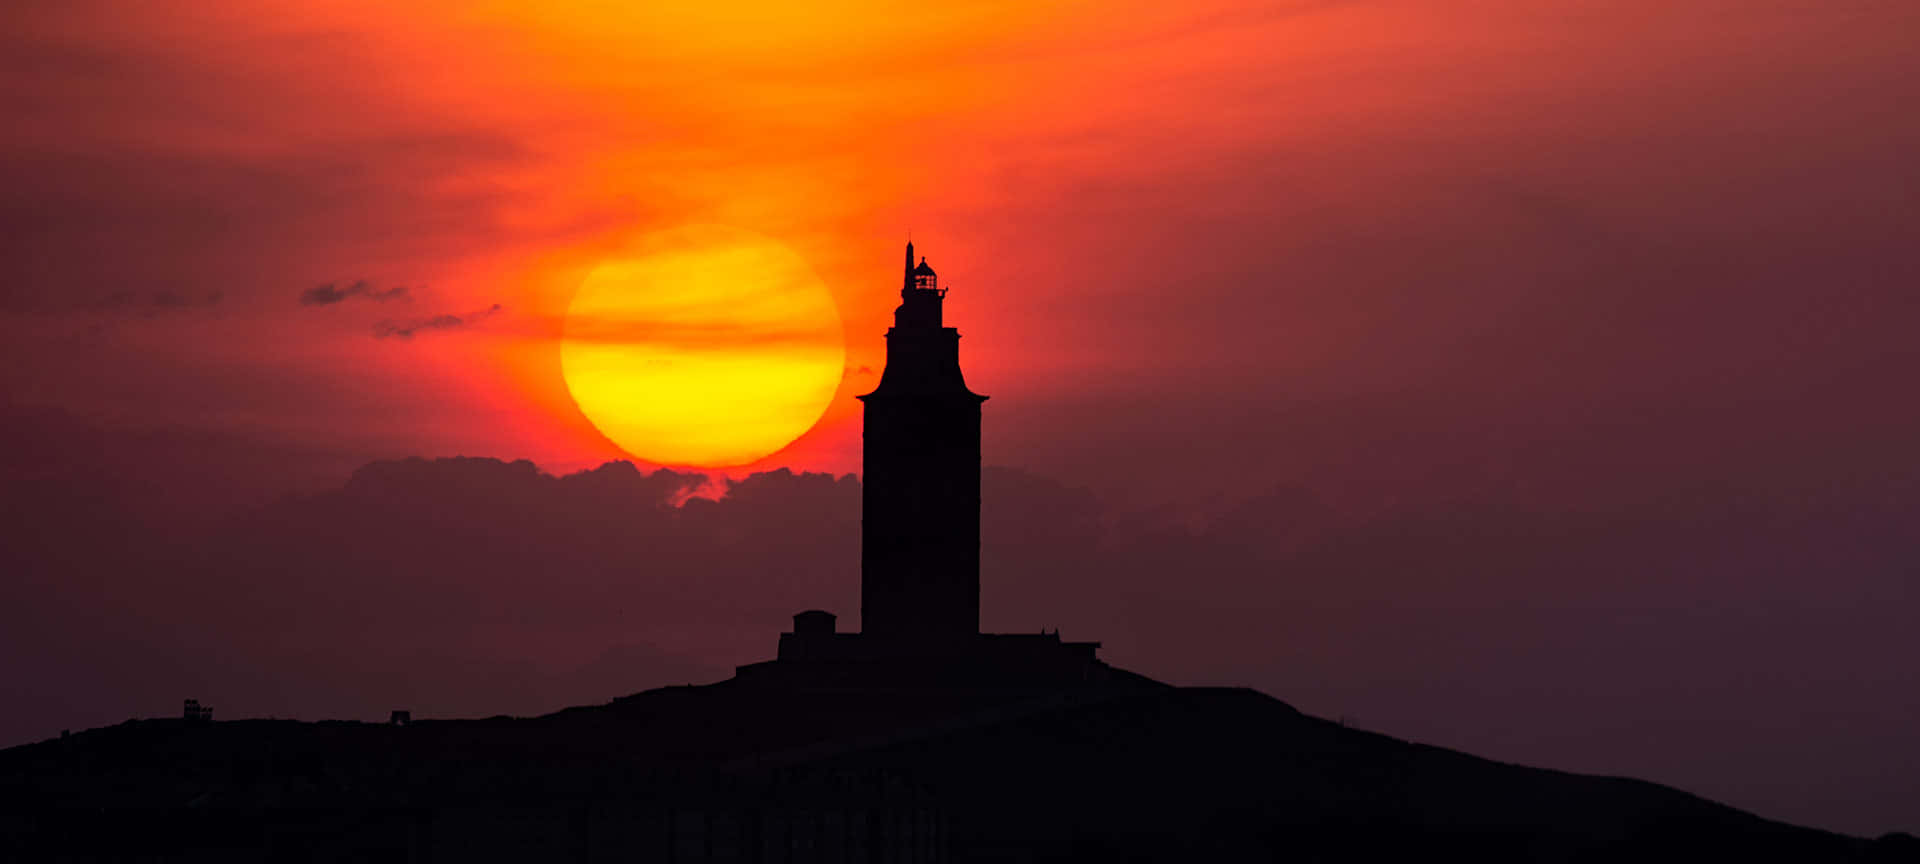 Papelde Parede Com Estética Vermelha Do Pôr Do Sol Com A Torre De Hércules. Papel de Parede